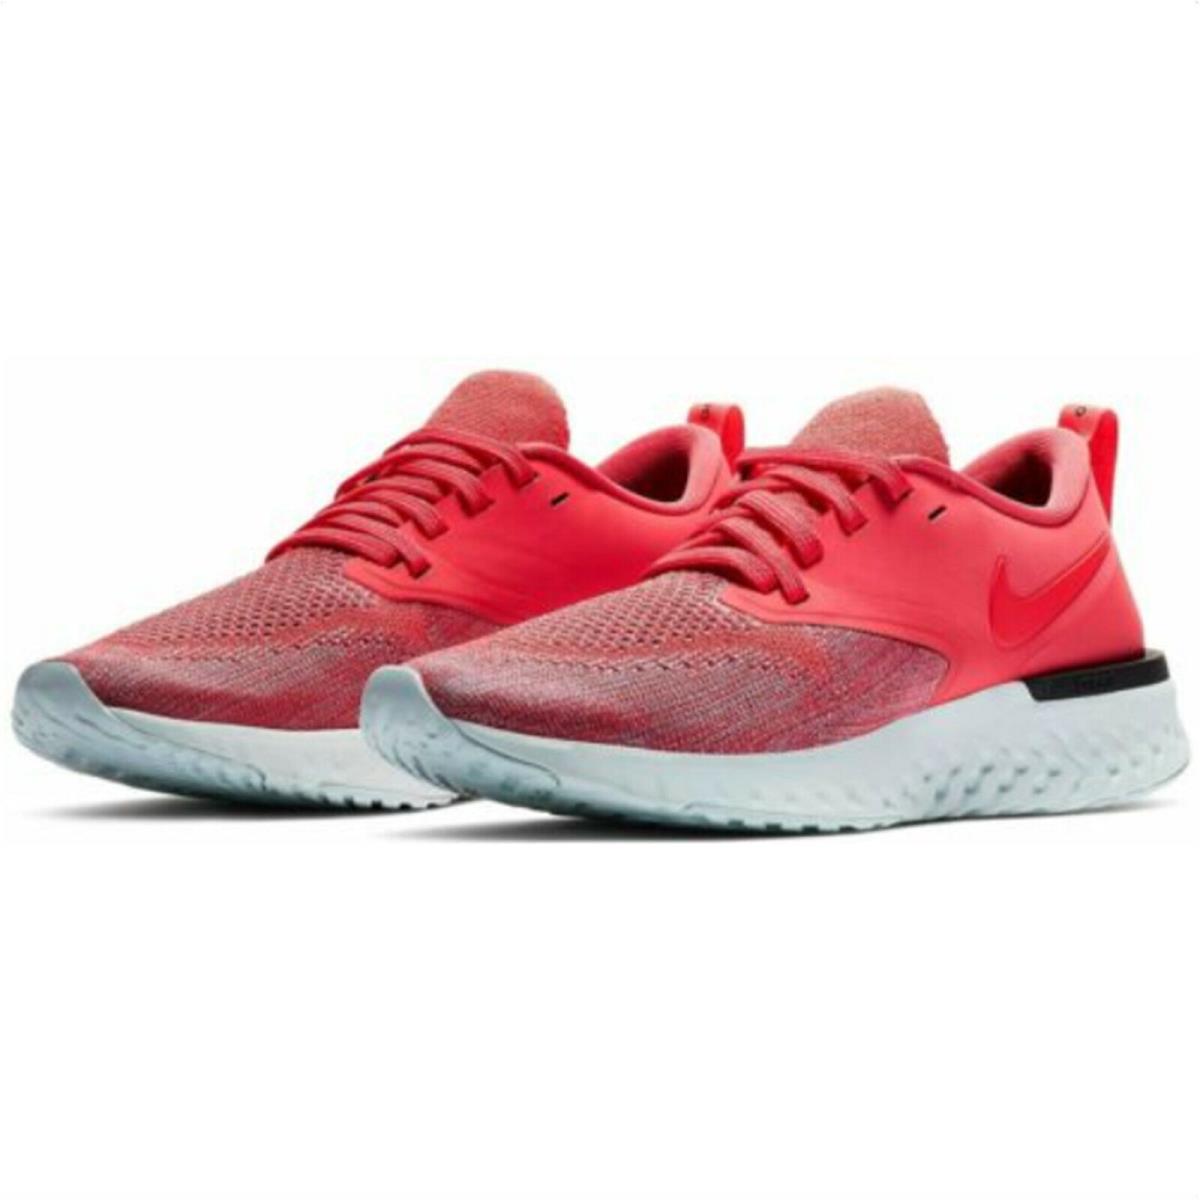 Nike shoes Odyssey React Flyknit - EMBER GLOW / RED ORBIT-PLUM DUST 2